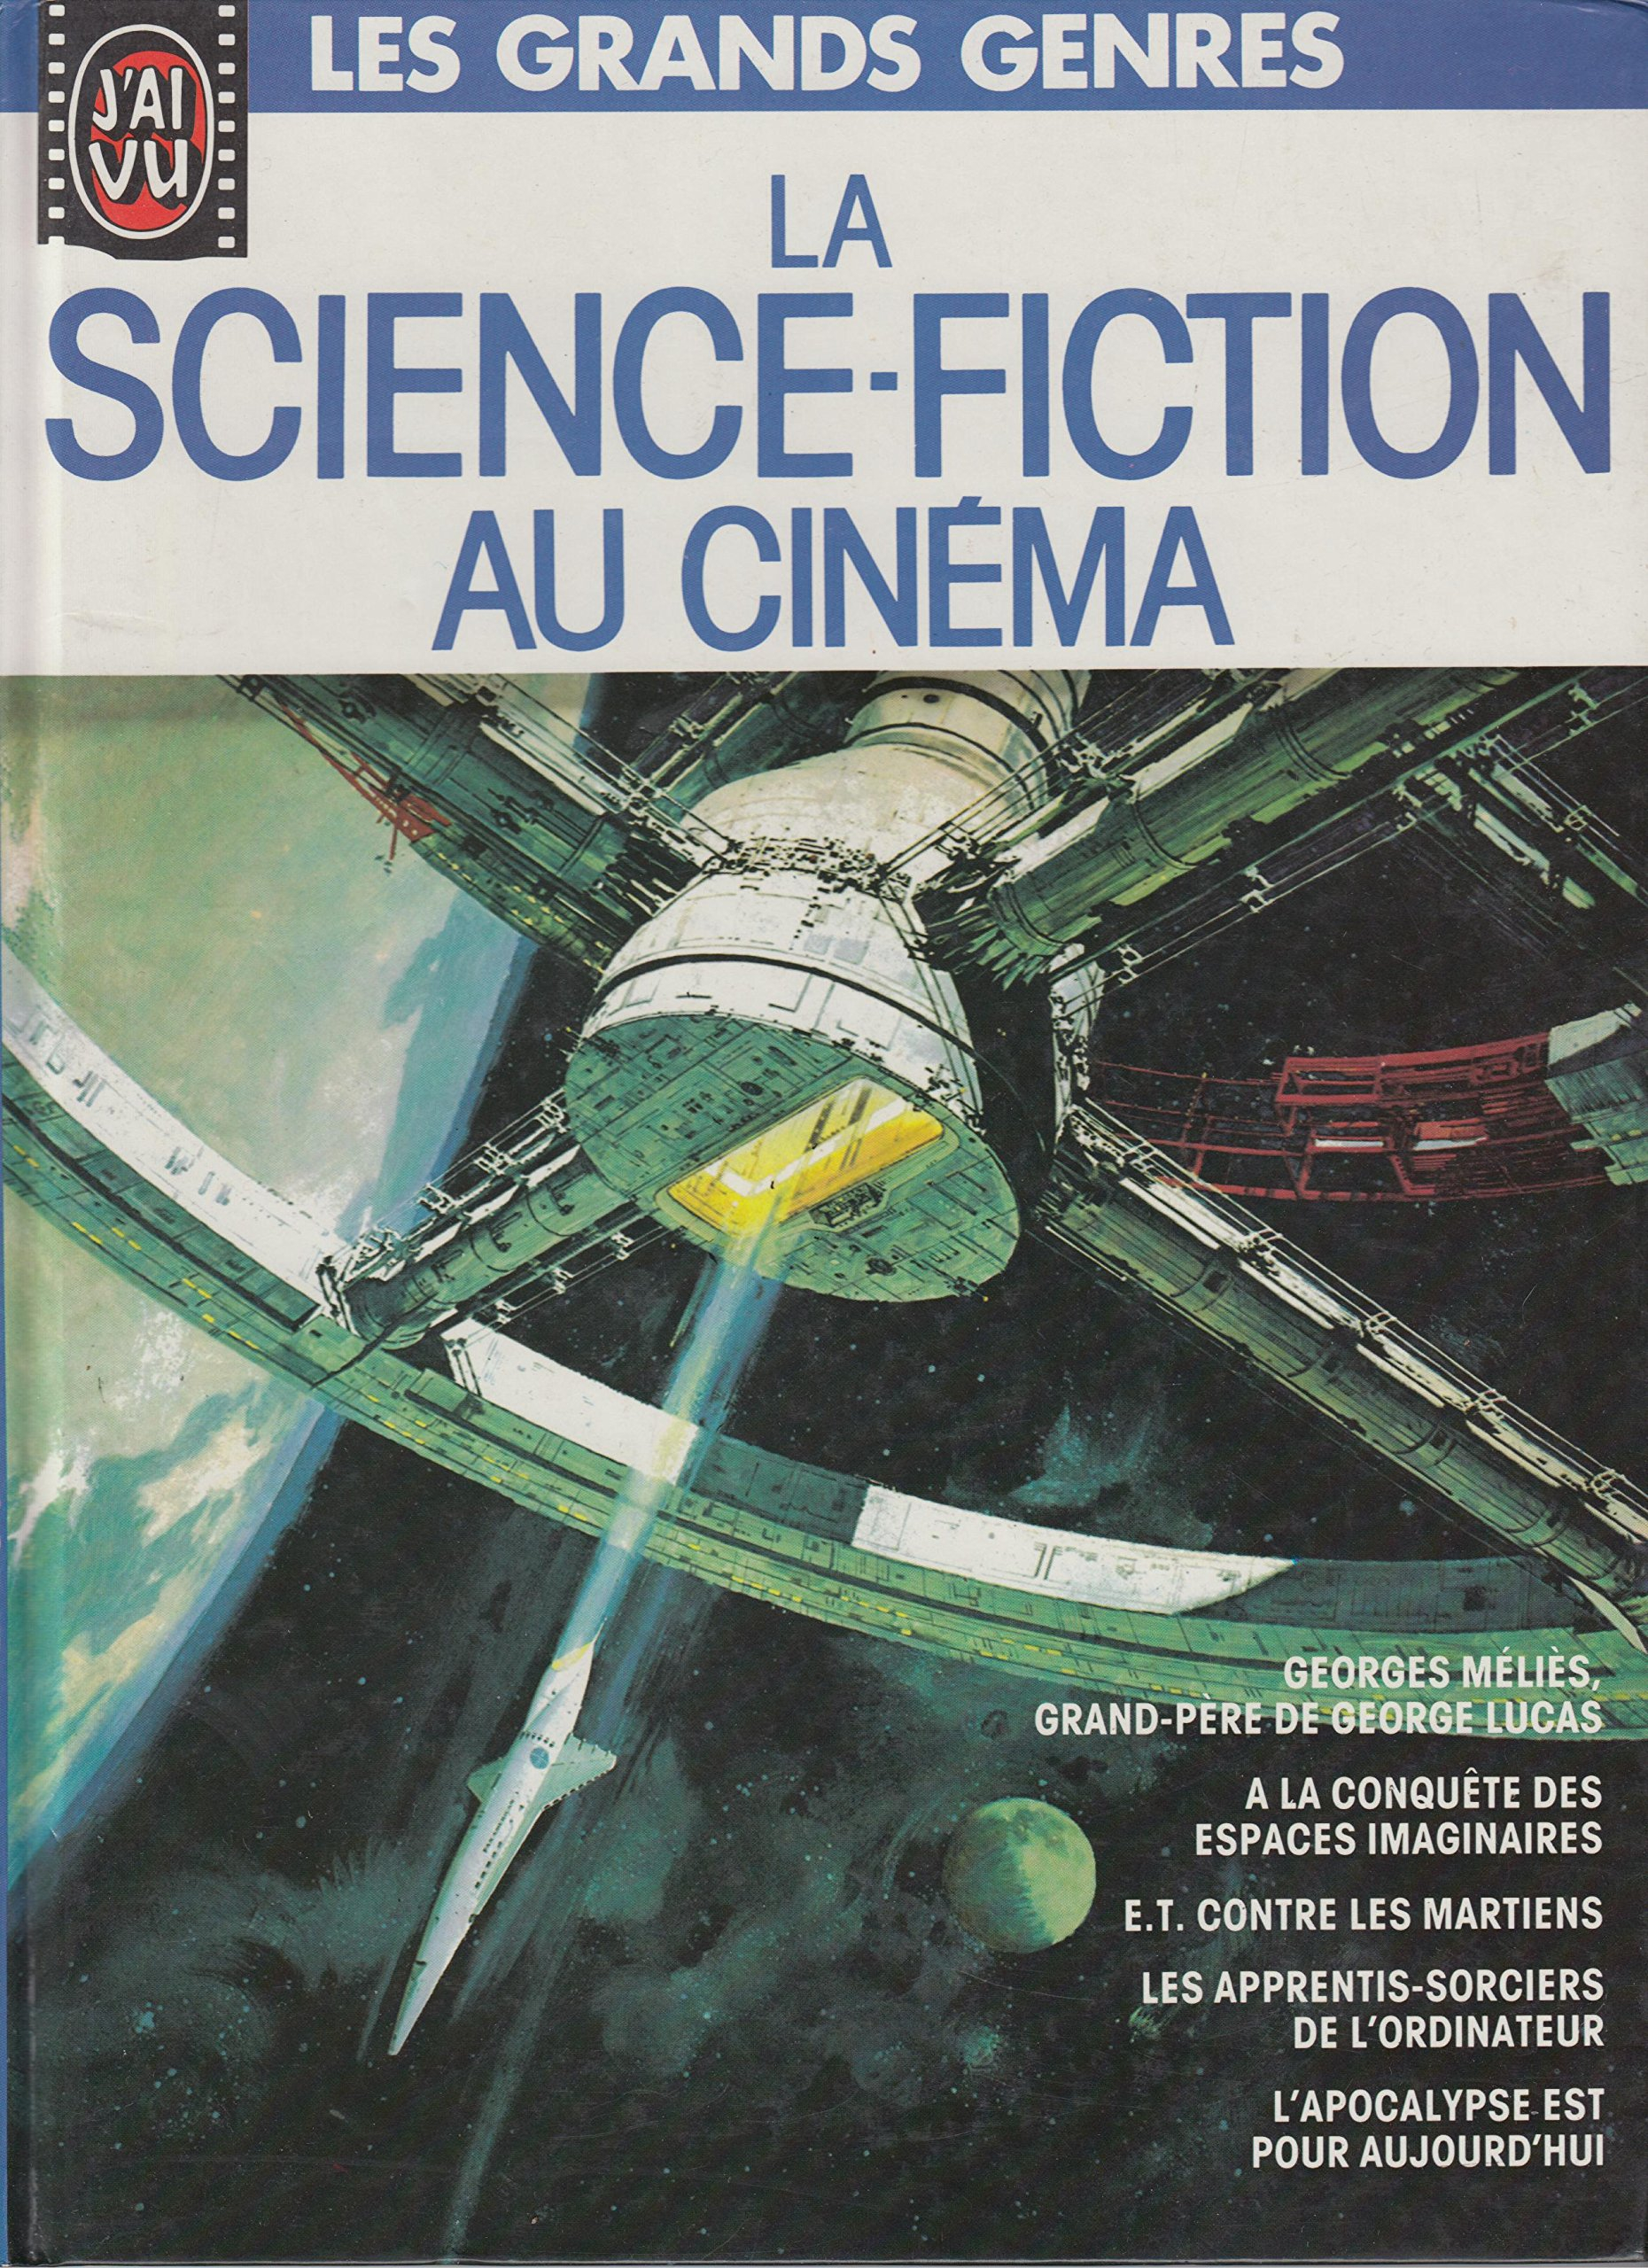 La Science Fiction au Cinema